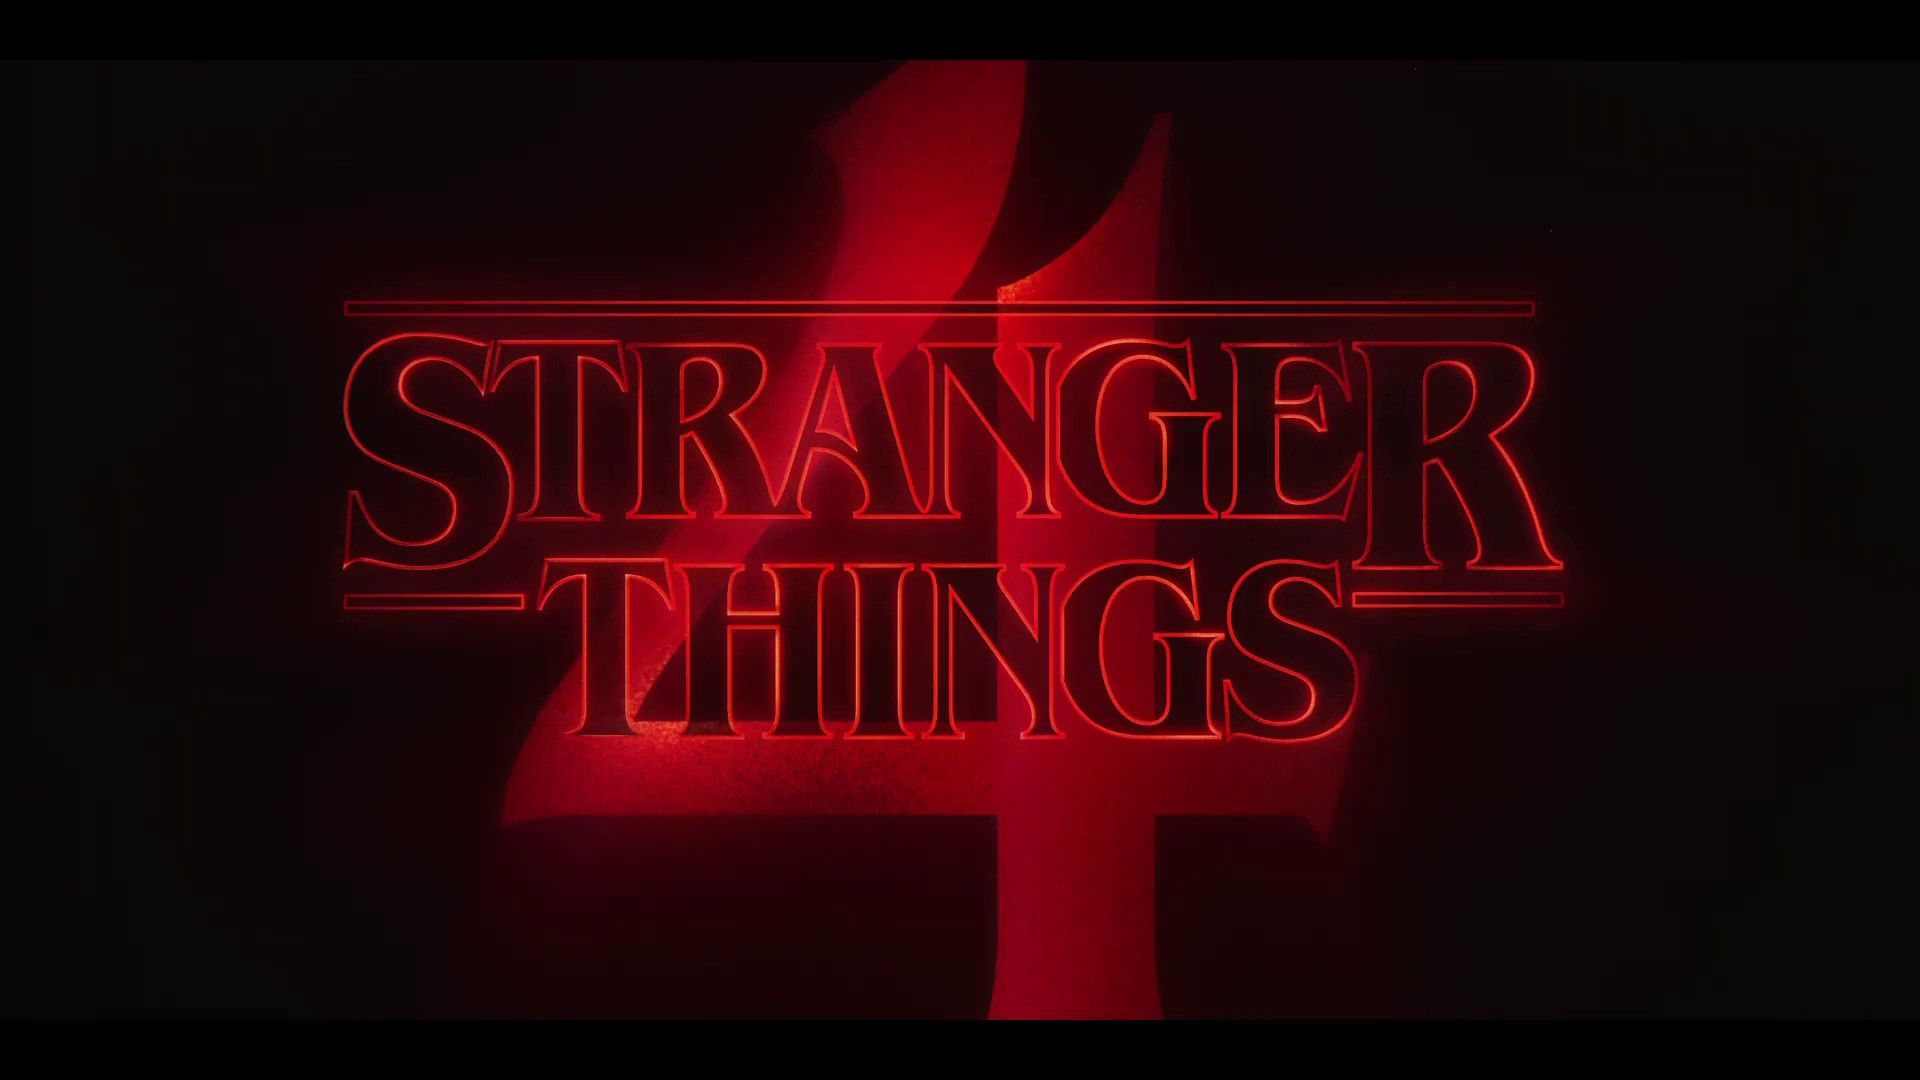 Stranger things 4 teaser poster - Stranger Things